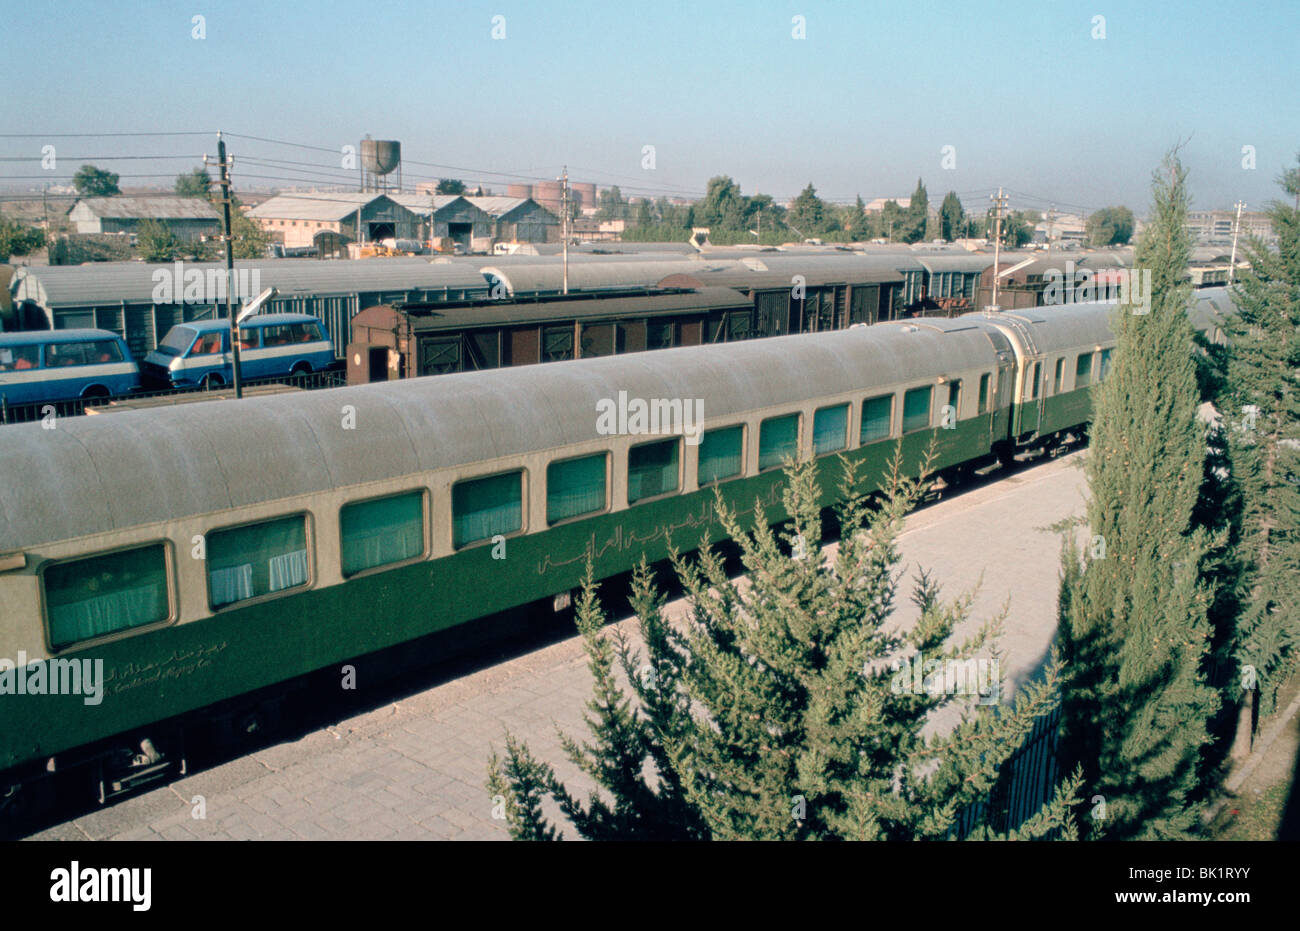 La station de chemin de fer où Agatha Christie est arrivé, Mossoul, Irak, 1977. Banque D'Images